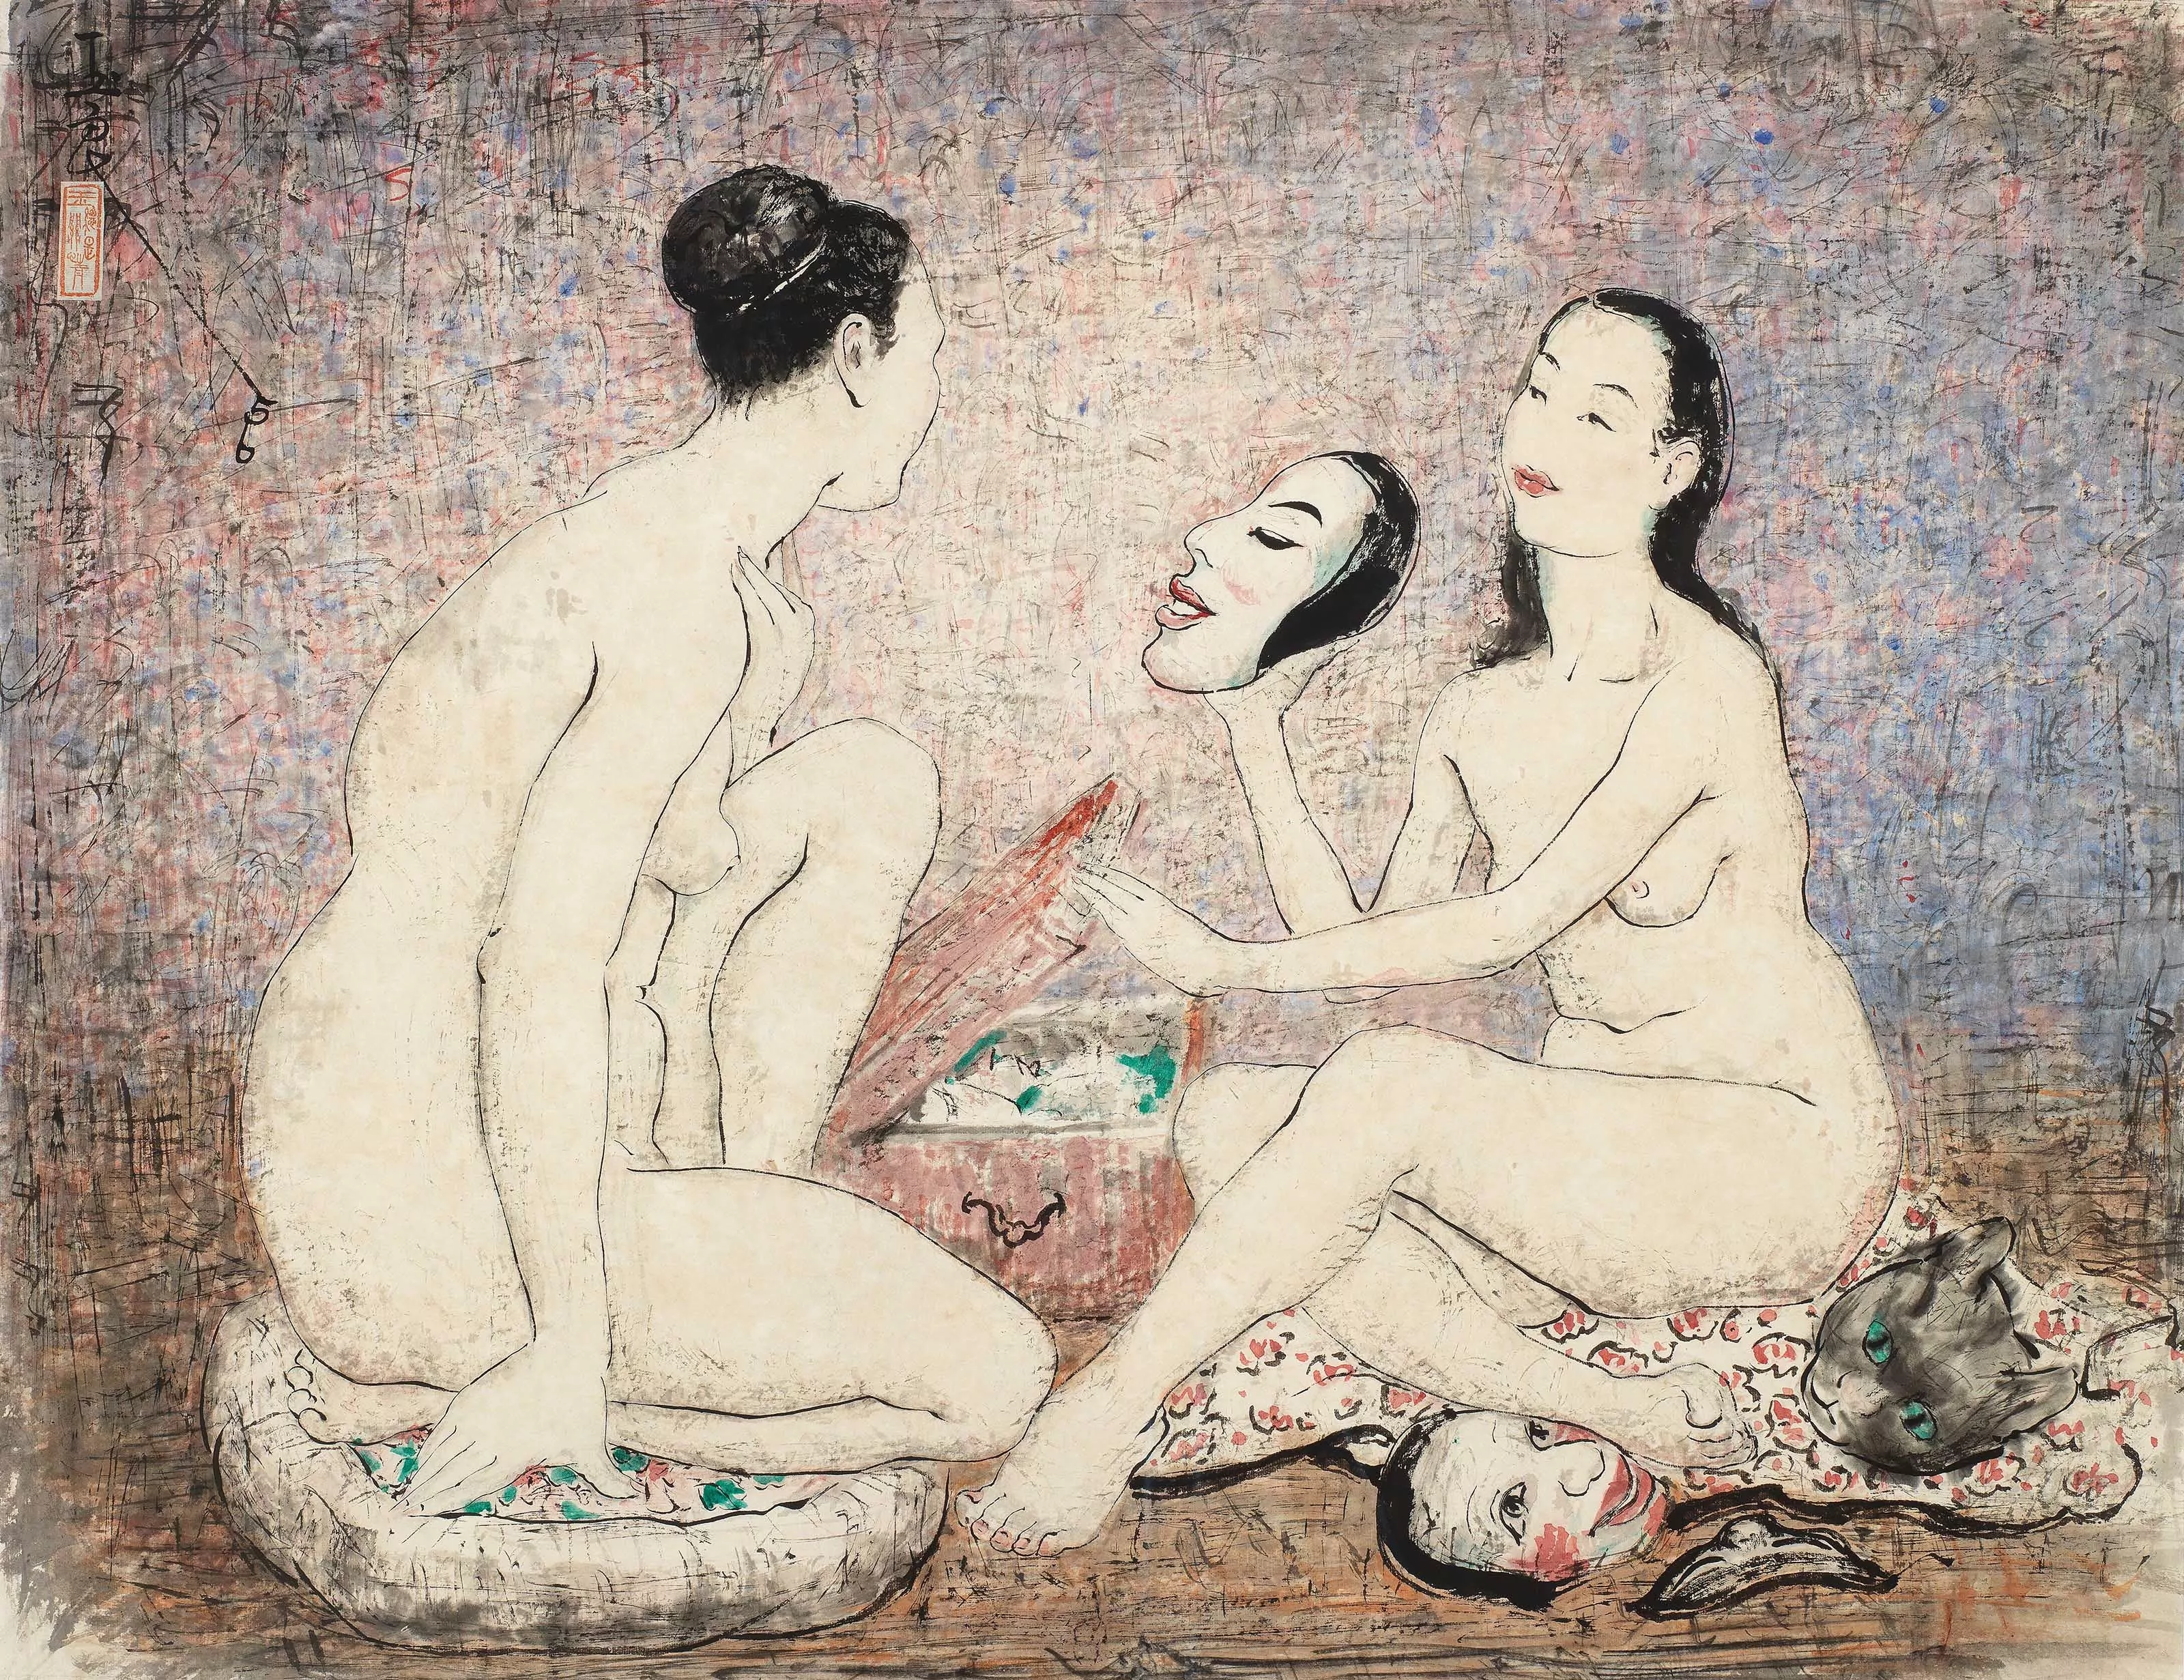 Pan Yuliang, The Artists